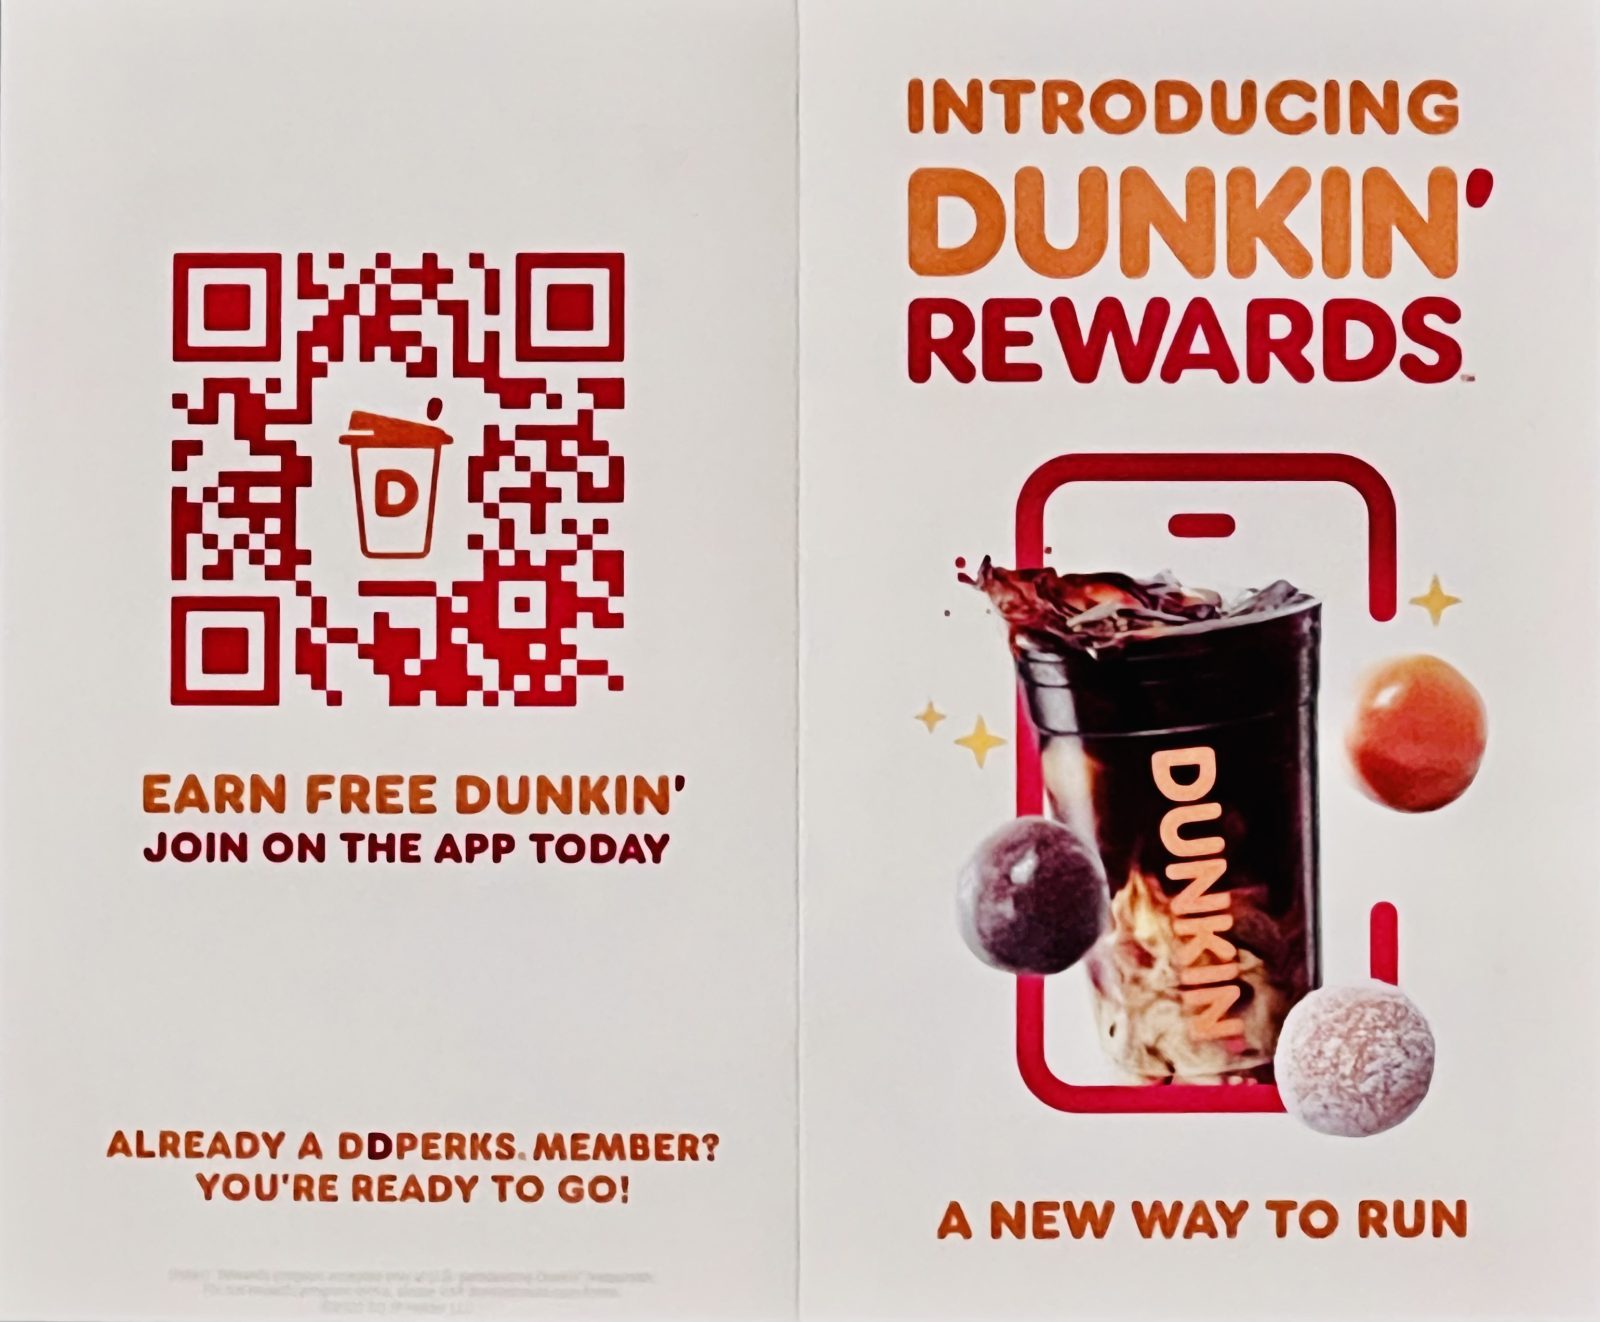 New Dunkin' Rewards